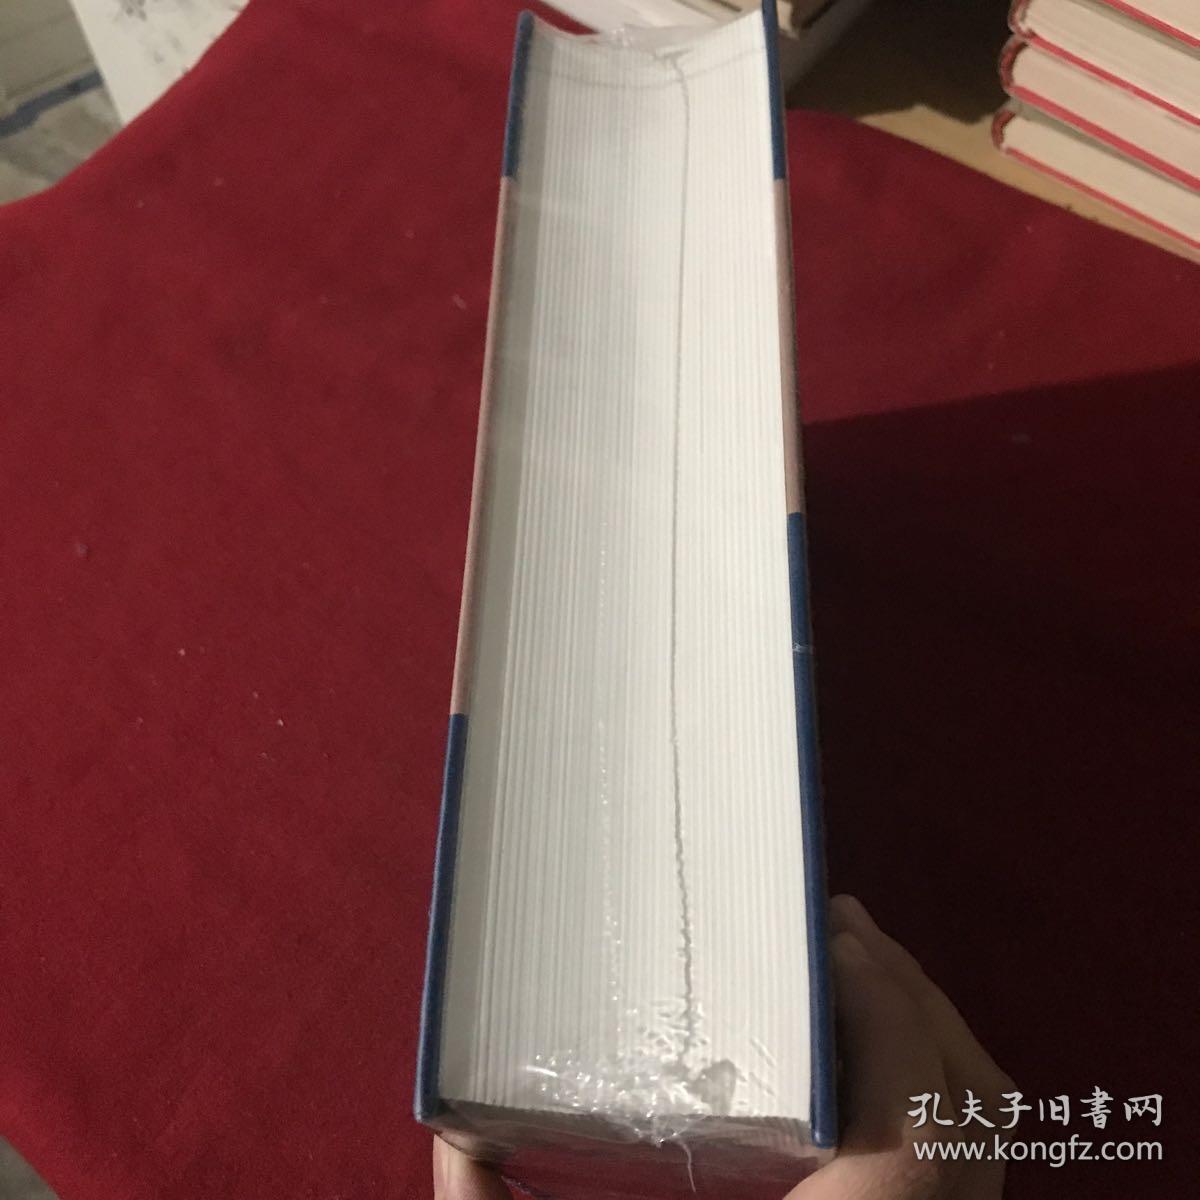 中国文学年鉴2019